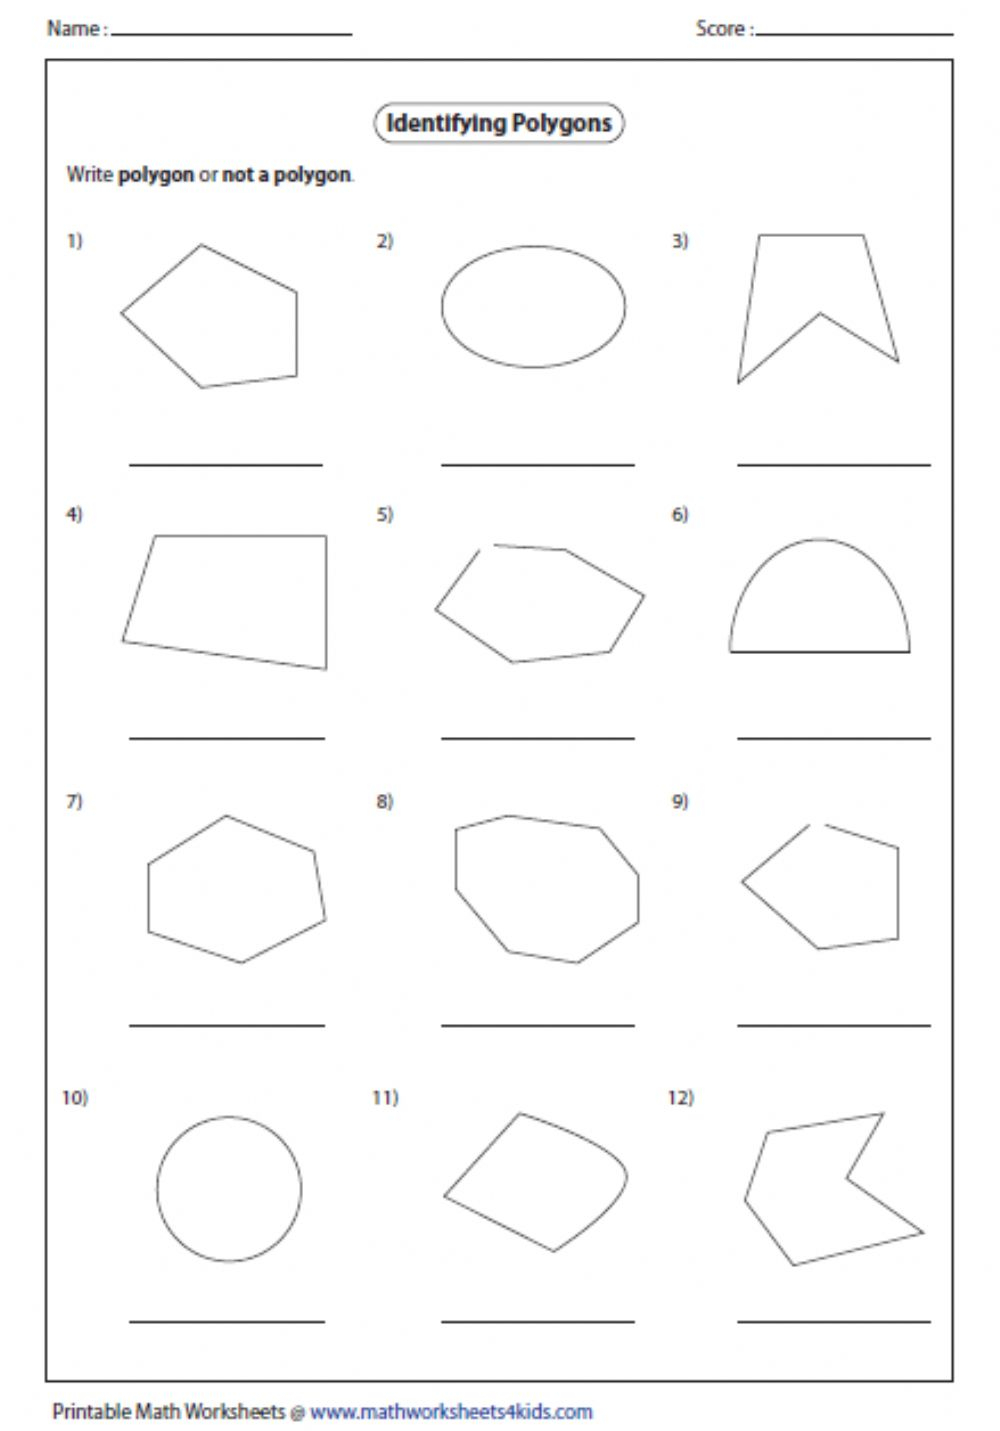 Identify Polygons Worksheet